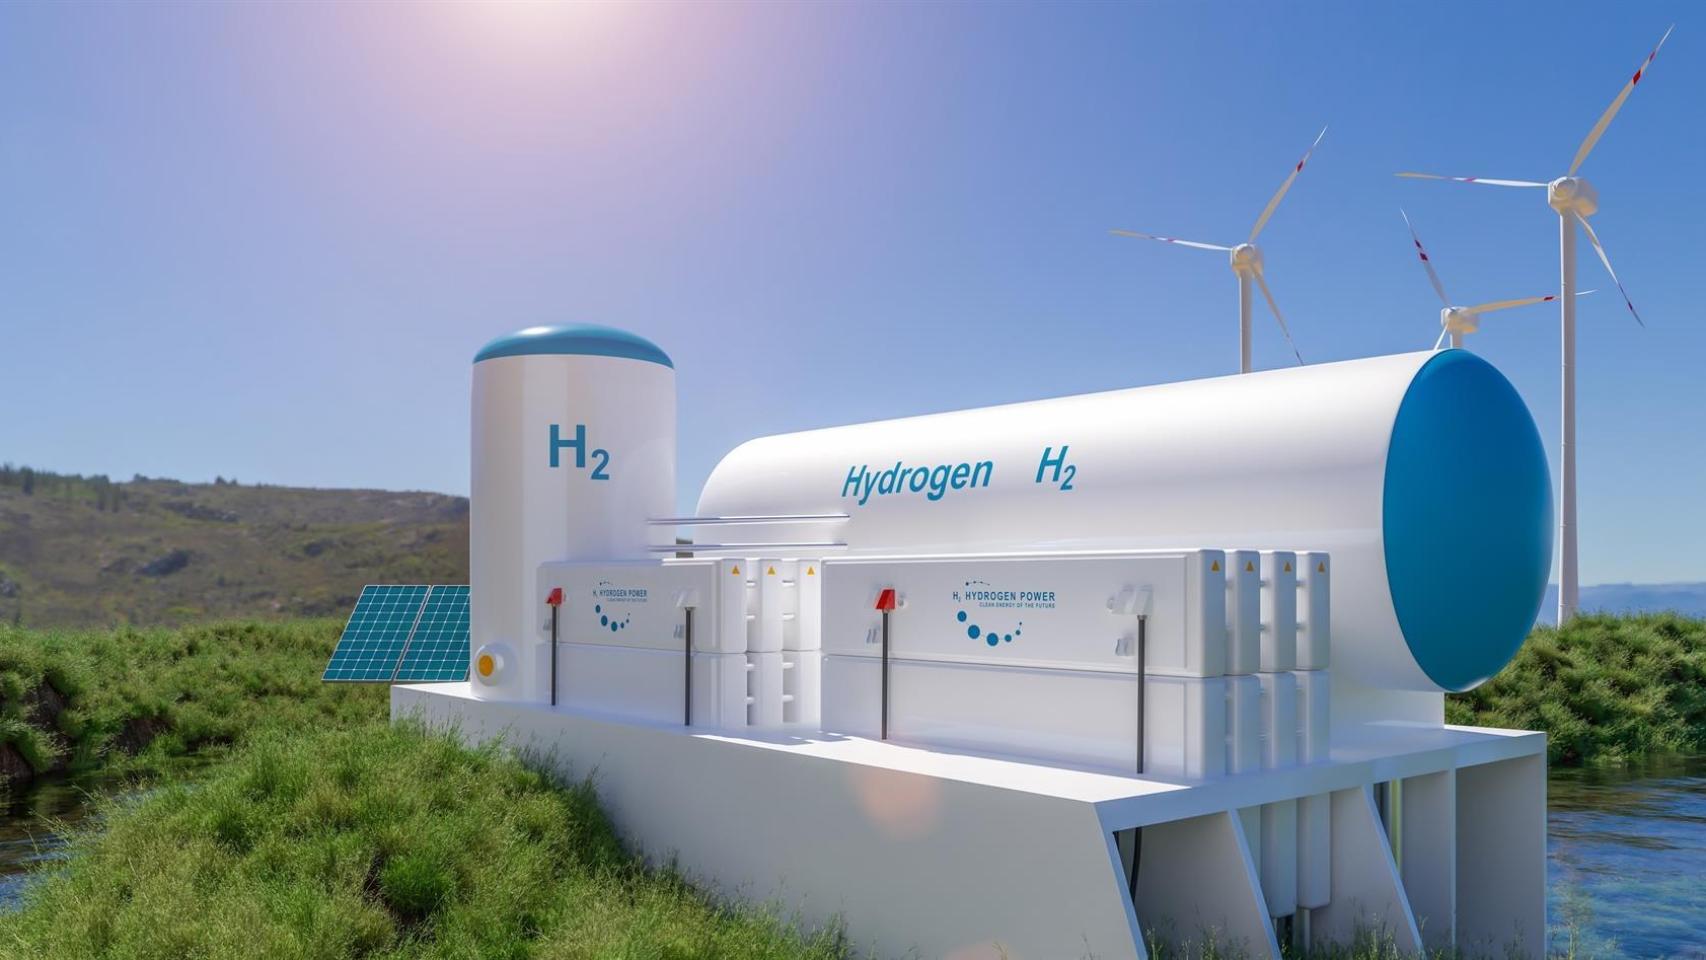 La vasca HyFive invertirá 250 millones en una planta de hidrógeno y metanol en Asturias